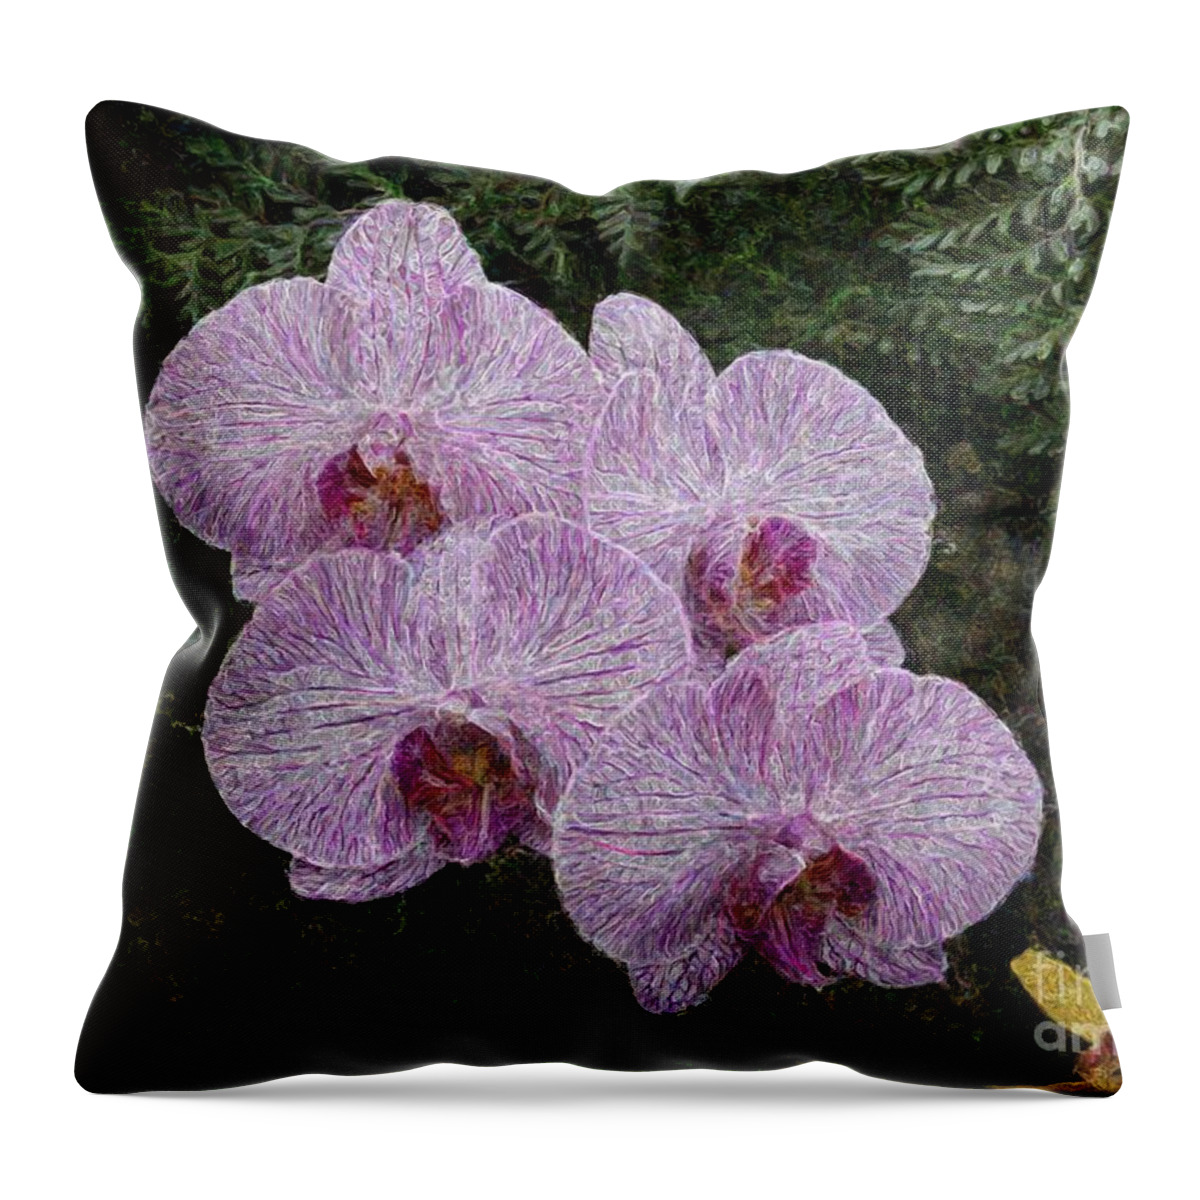 Digital Art Throw Pillow featuring the photograph Orchids 1 by Jean Bernard Roussilhe